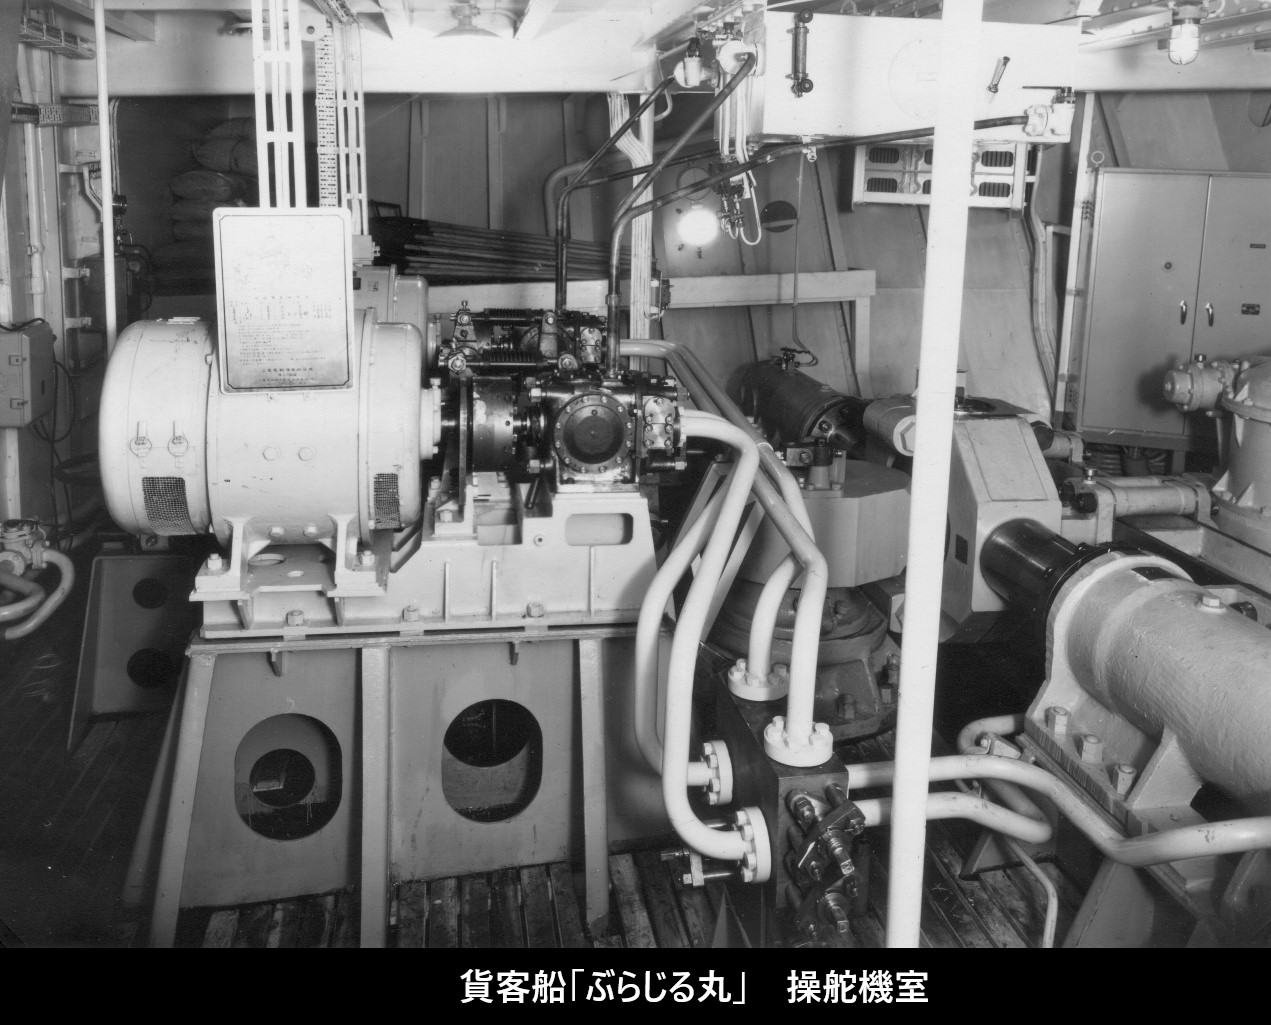 大阪商船「ぶらじる丸」(二代目)写真集(その1) | デジタル造船資料館